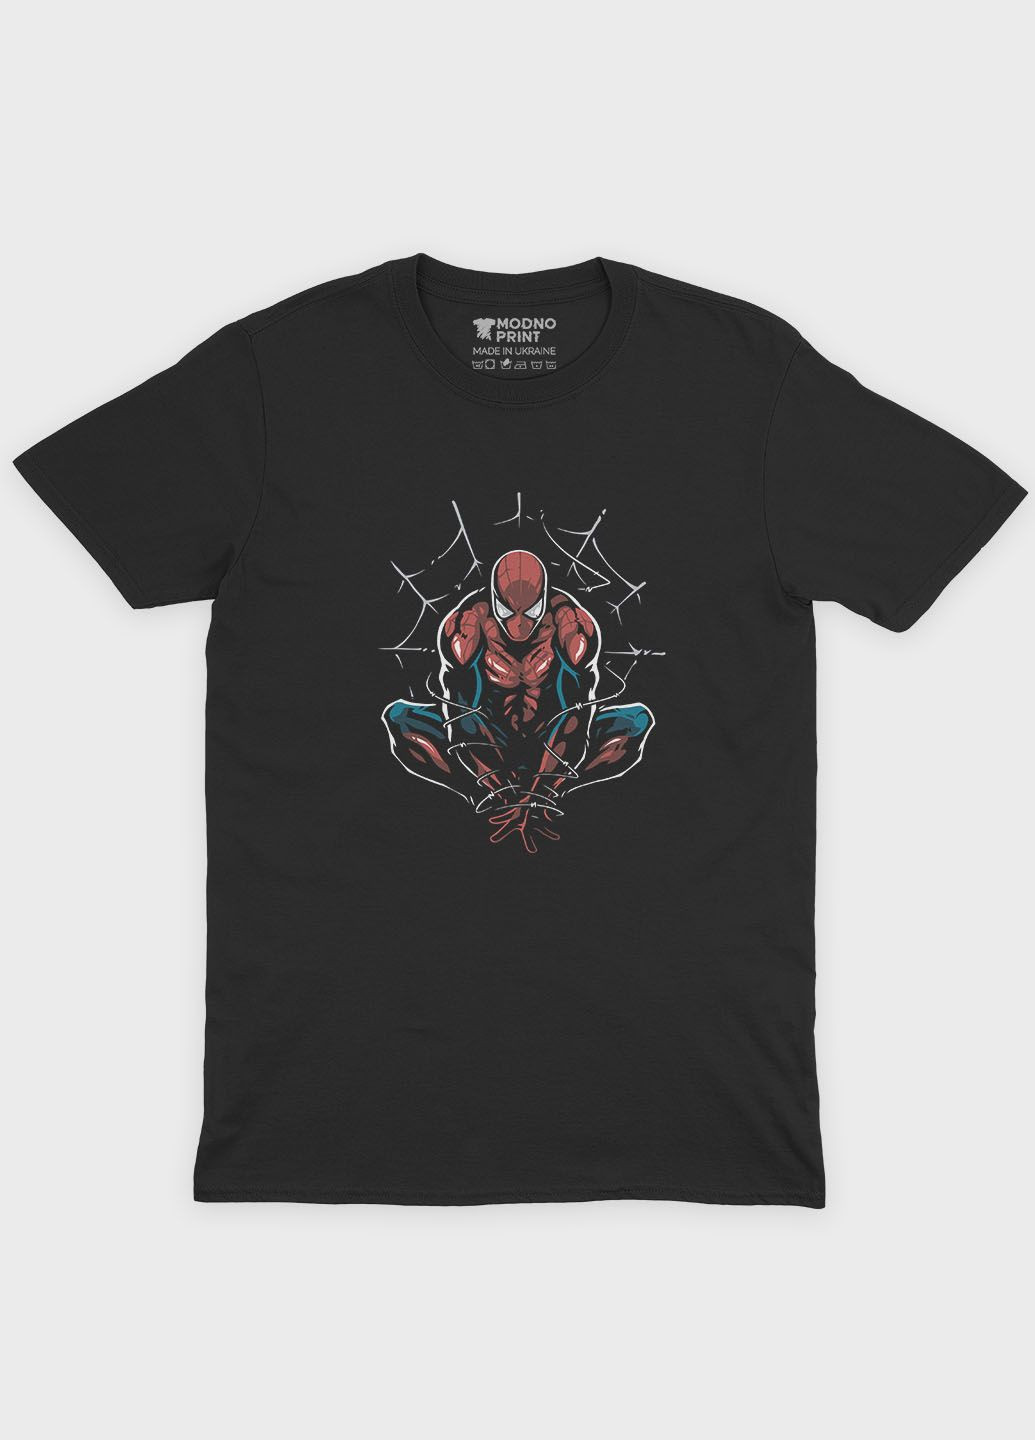 Чорна демісезонна футболка для дівчинки з принтом супергероя - людина-павук (ts001-1-gl-006-014-086-g) Modno